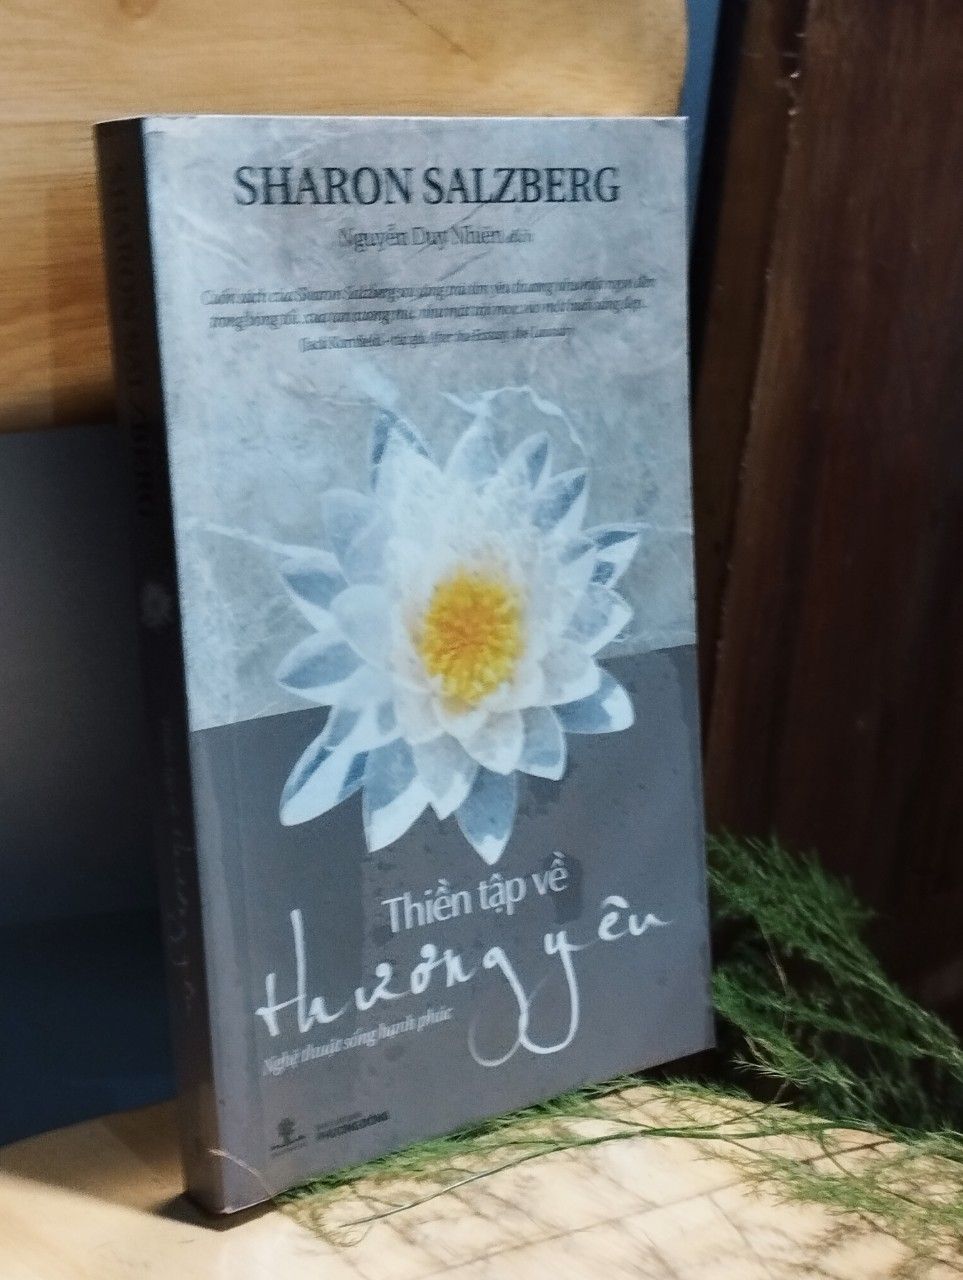  Thiền tập về thương yêu - Sharon Salzberg 